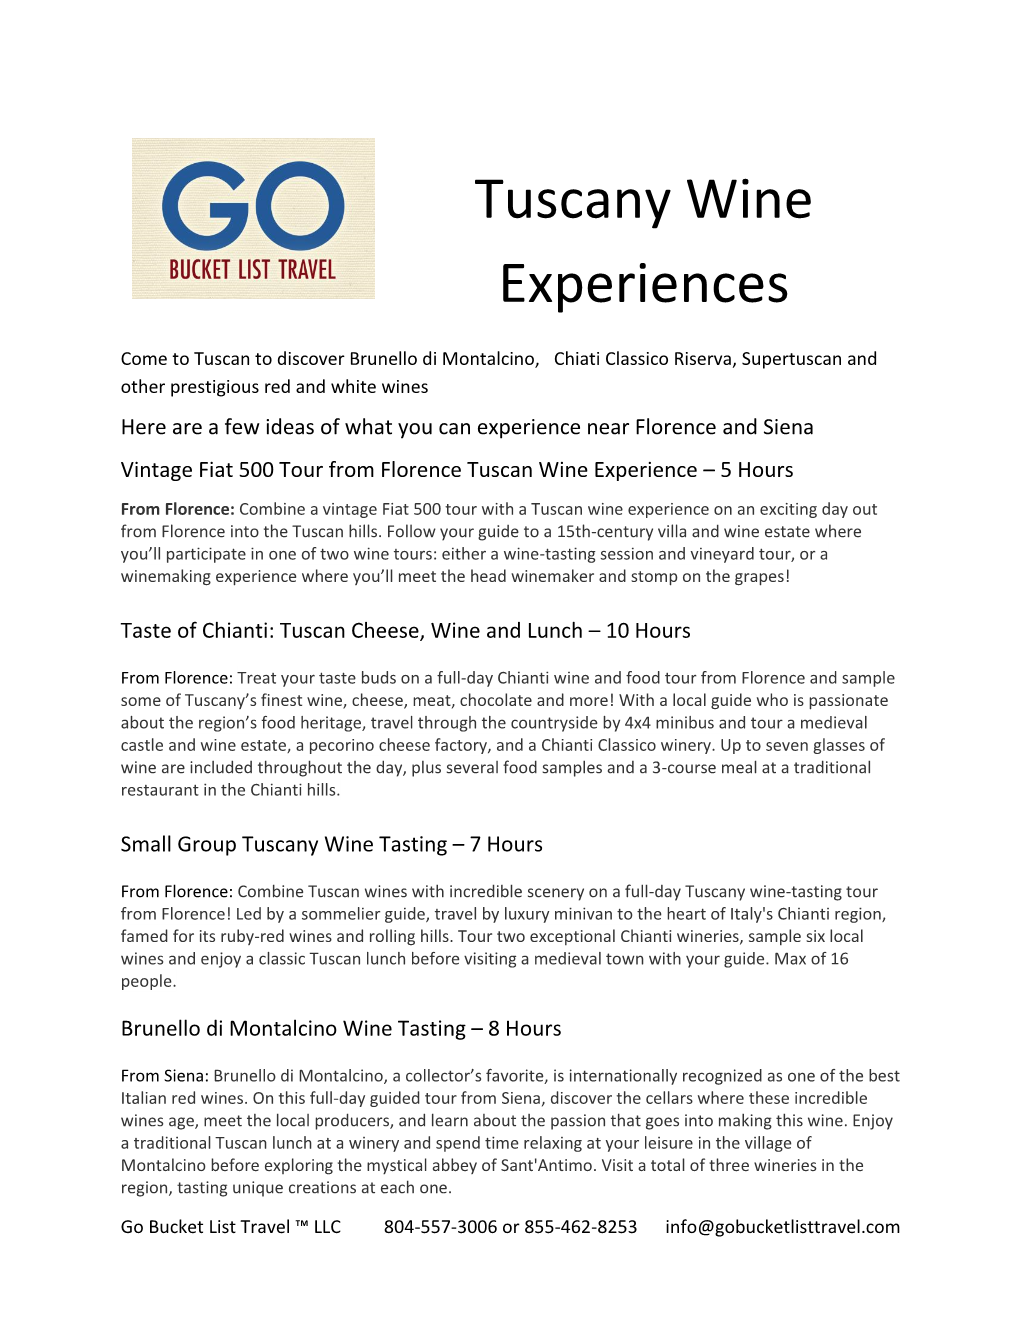 Tuscany Wine Experiences